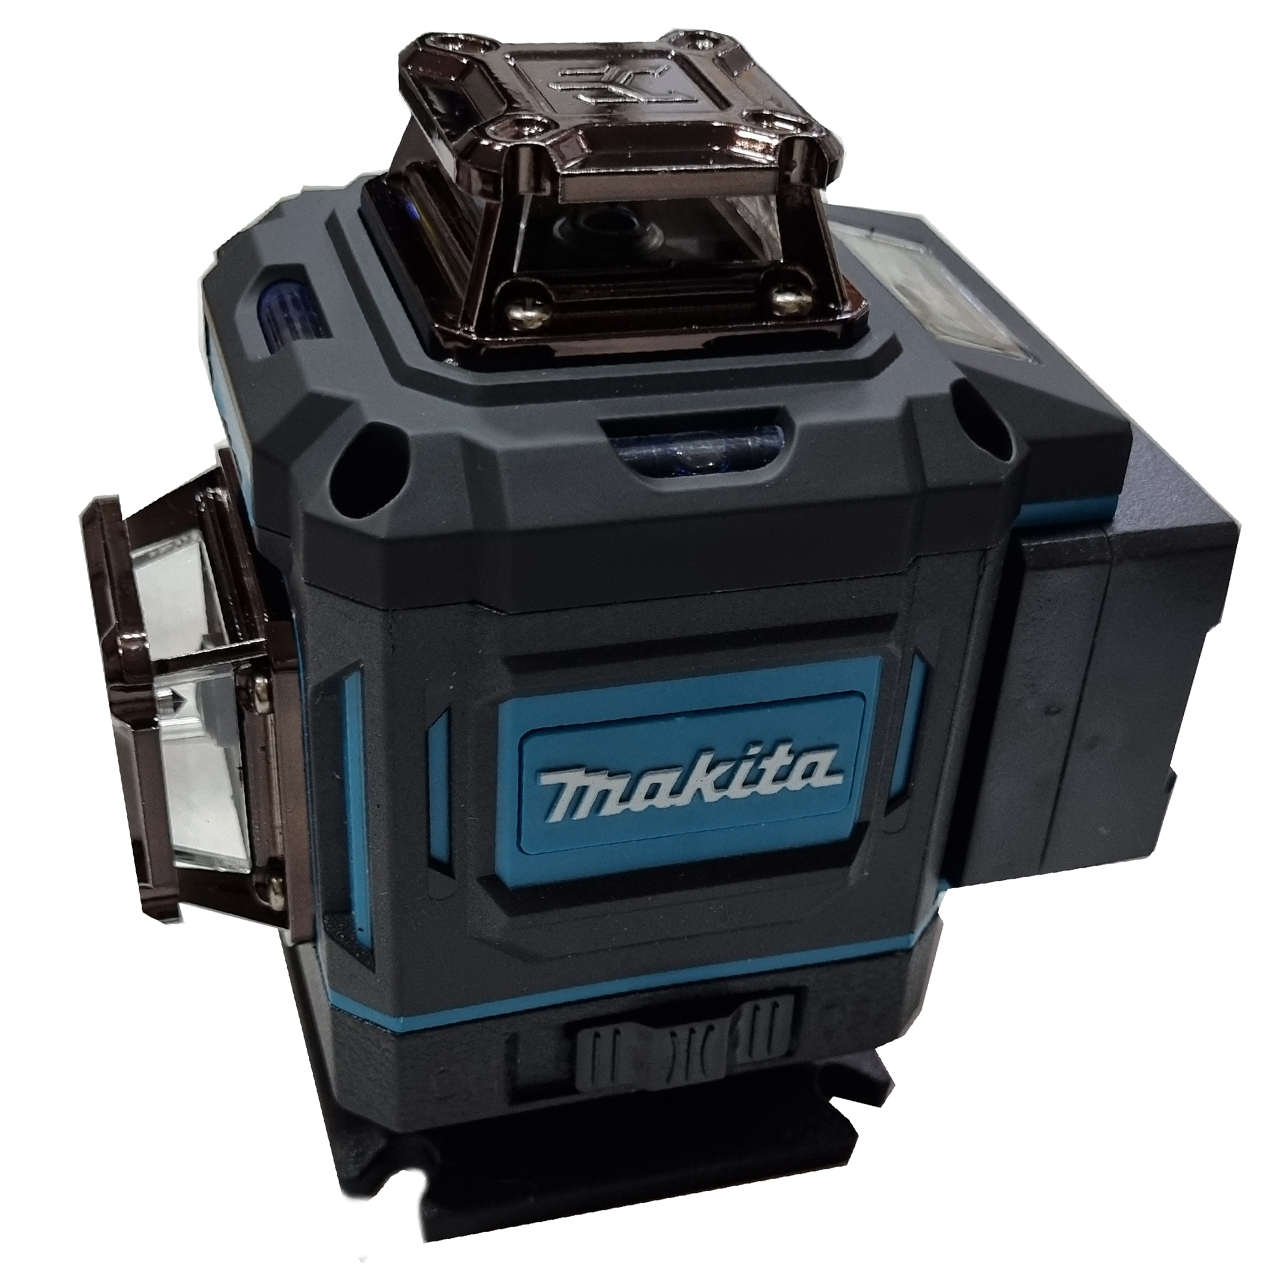 نکته خرید - قیمت روز تراز لیزری ماکیتا مدل فوق هوشمند 4 بعدی کد Makita 360-4D - Green Line خرید